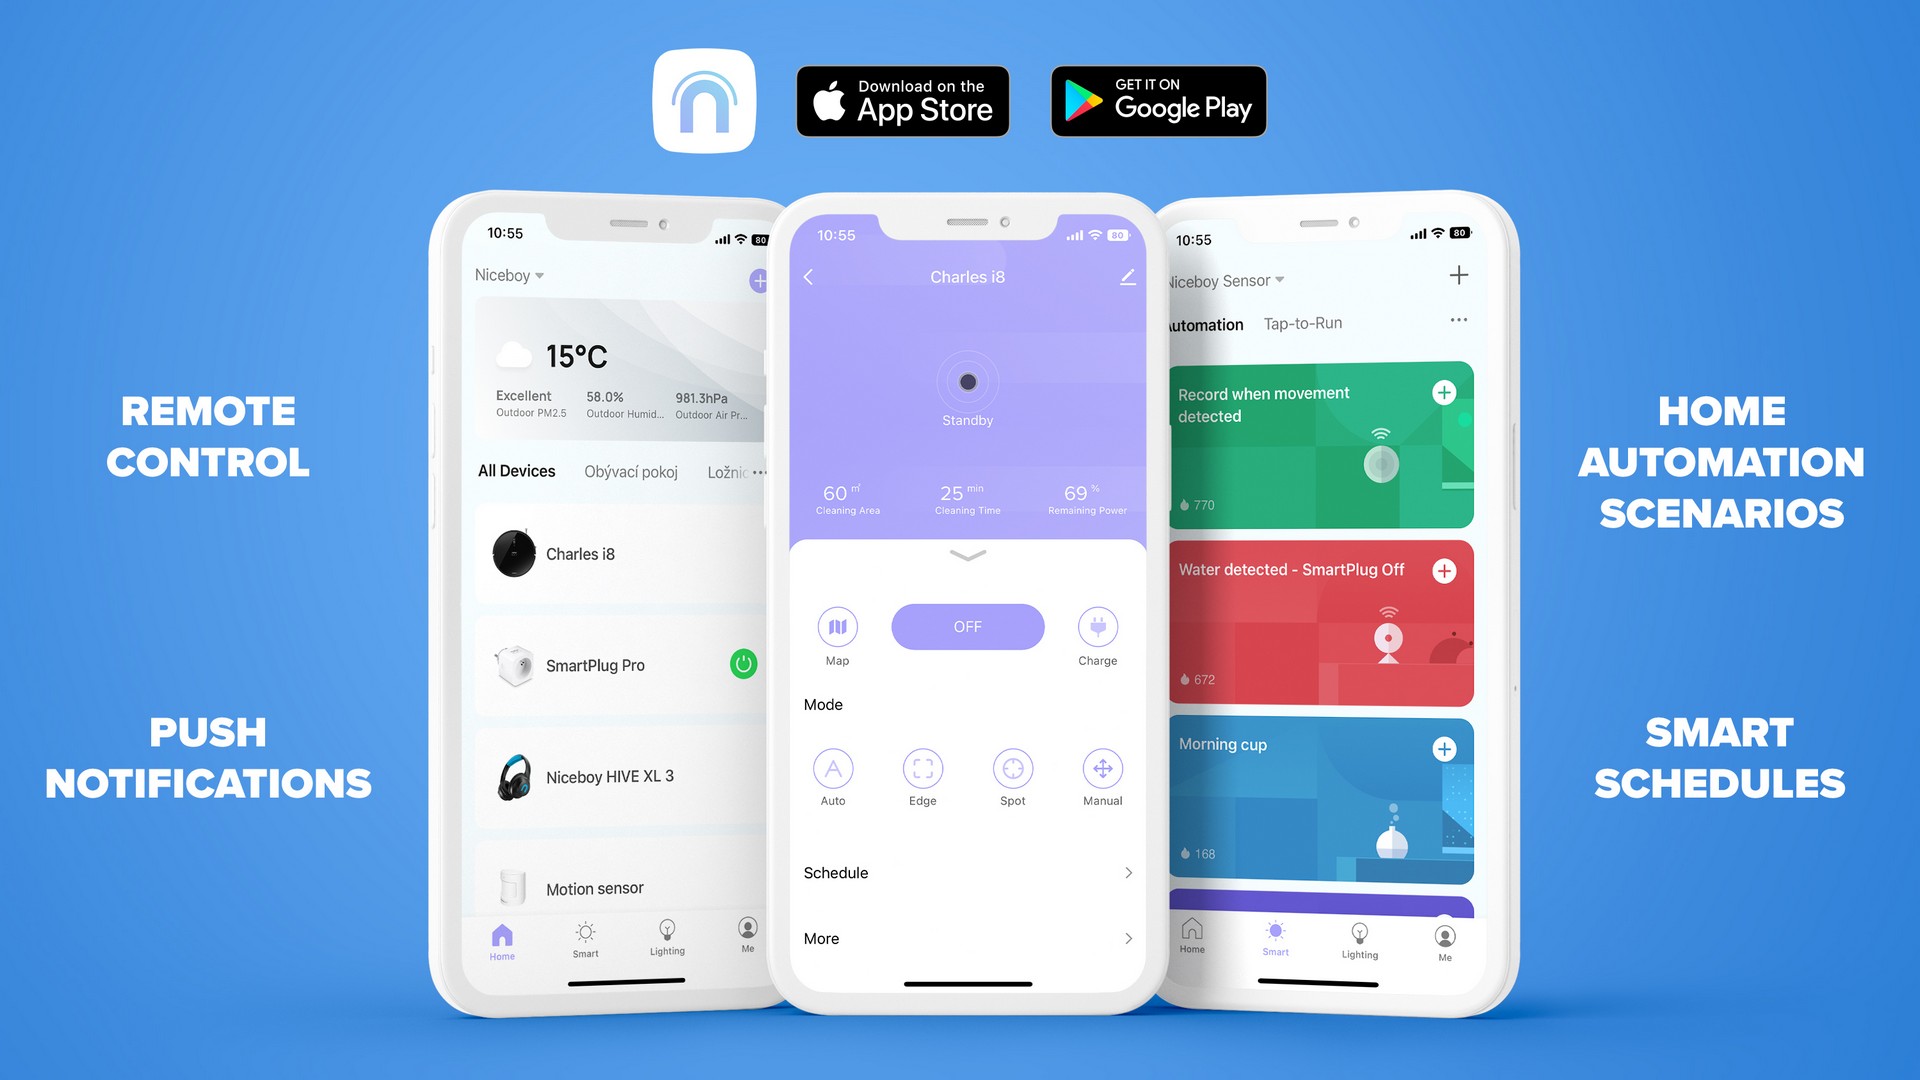 Mobilní aplikace Niceboy ION poskytuje přehledné rozhraní, se kterým budete mít pod palcem všechny chytré spotřebiče z této produktové řady kdykoliv a odkudkoliv.